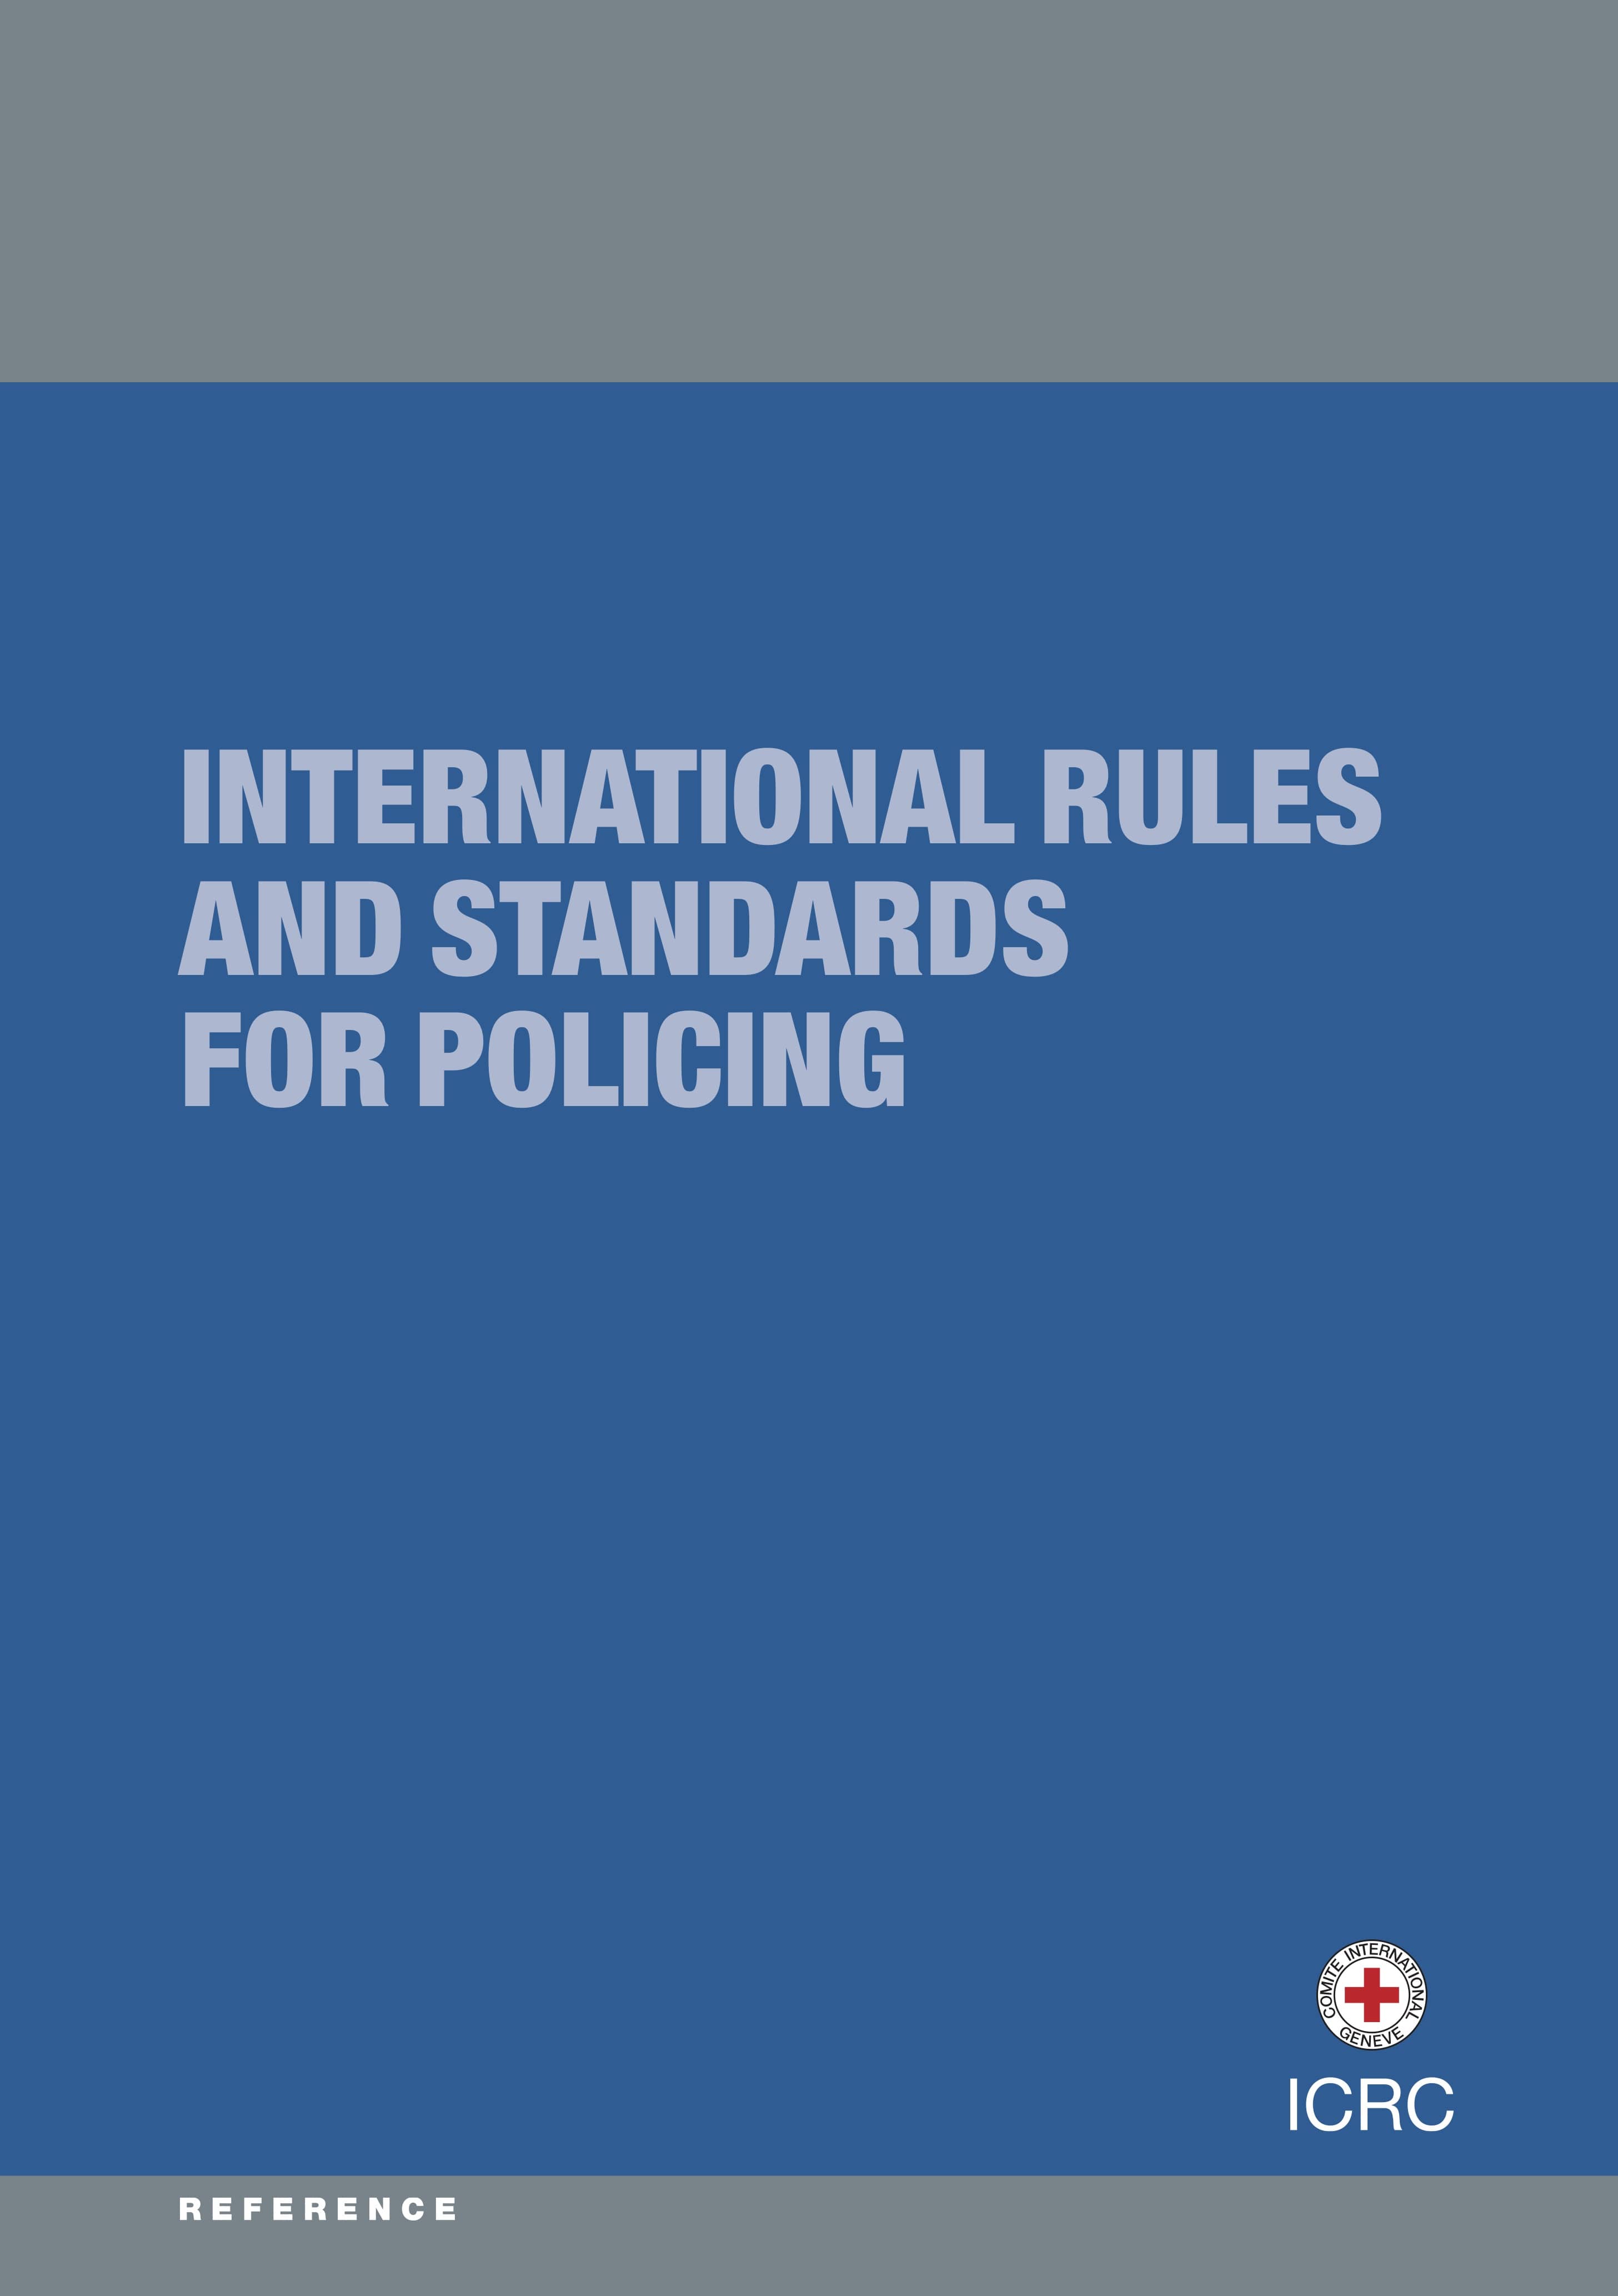 Reglas y normas internacionales aplicables a la función policial (CICR, 2014)